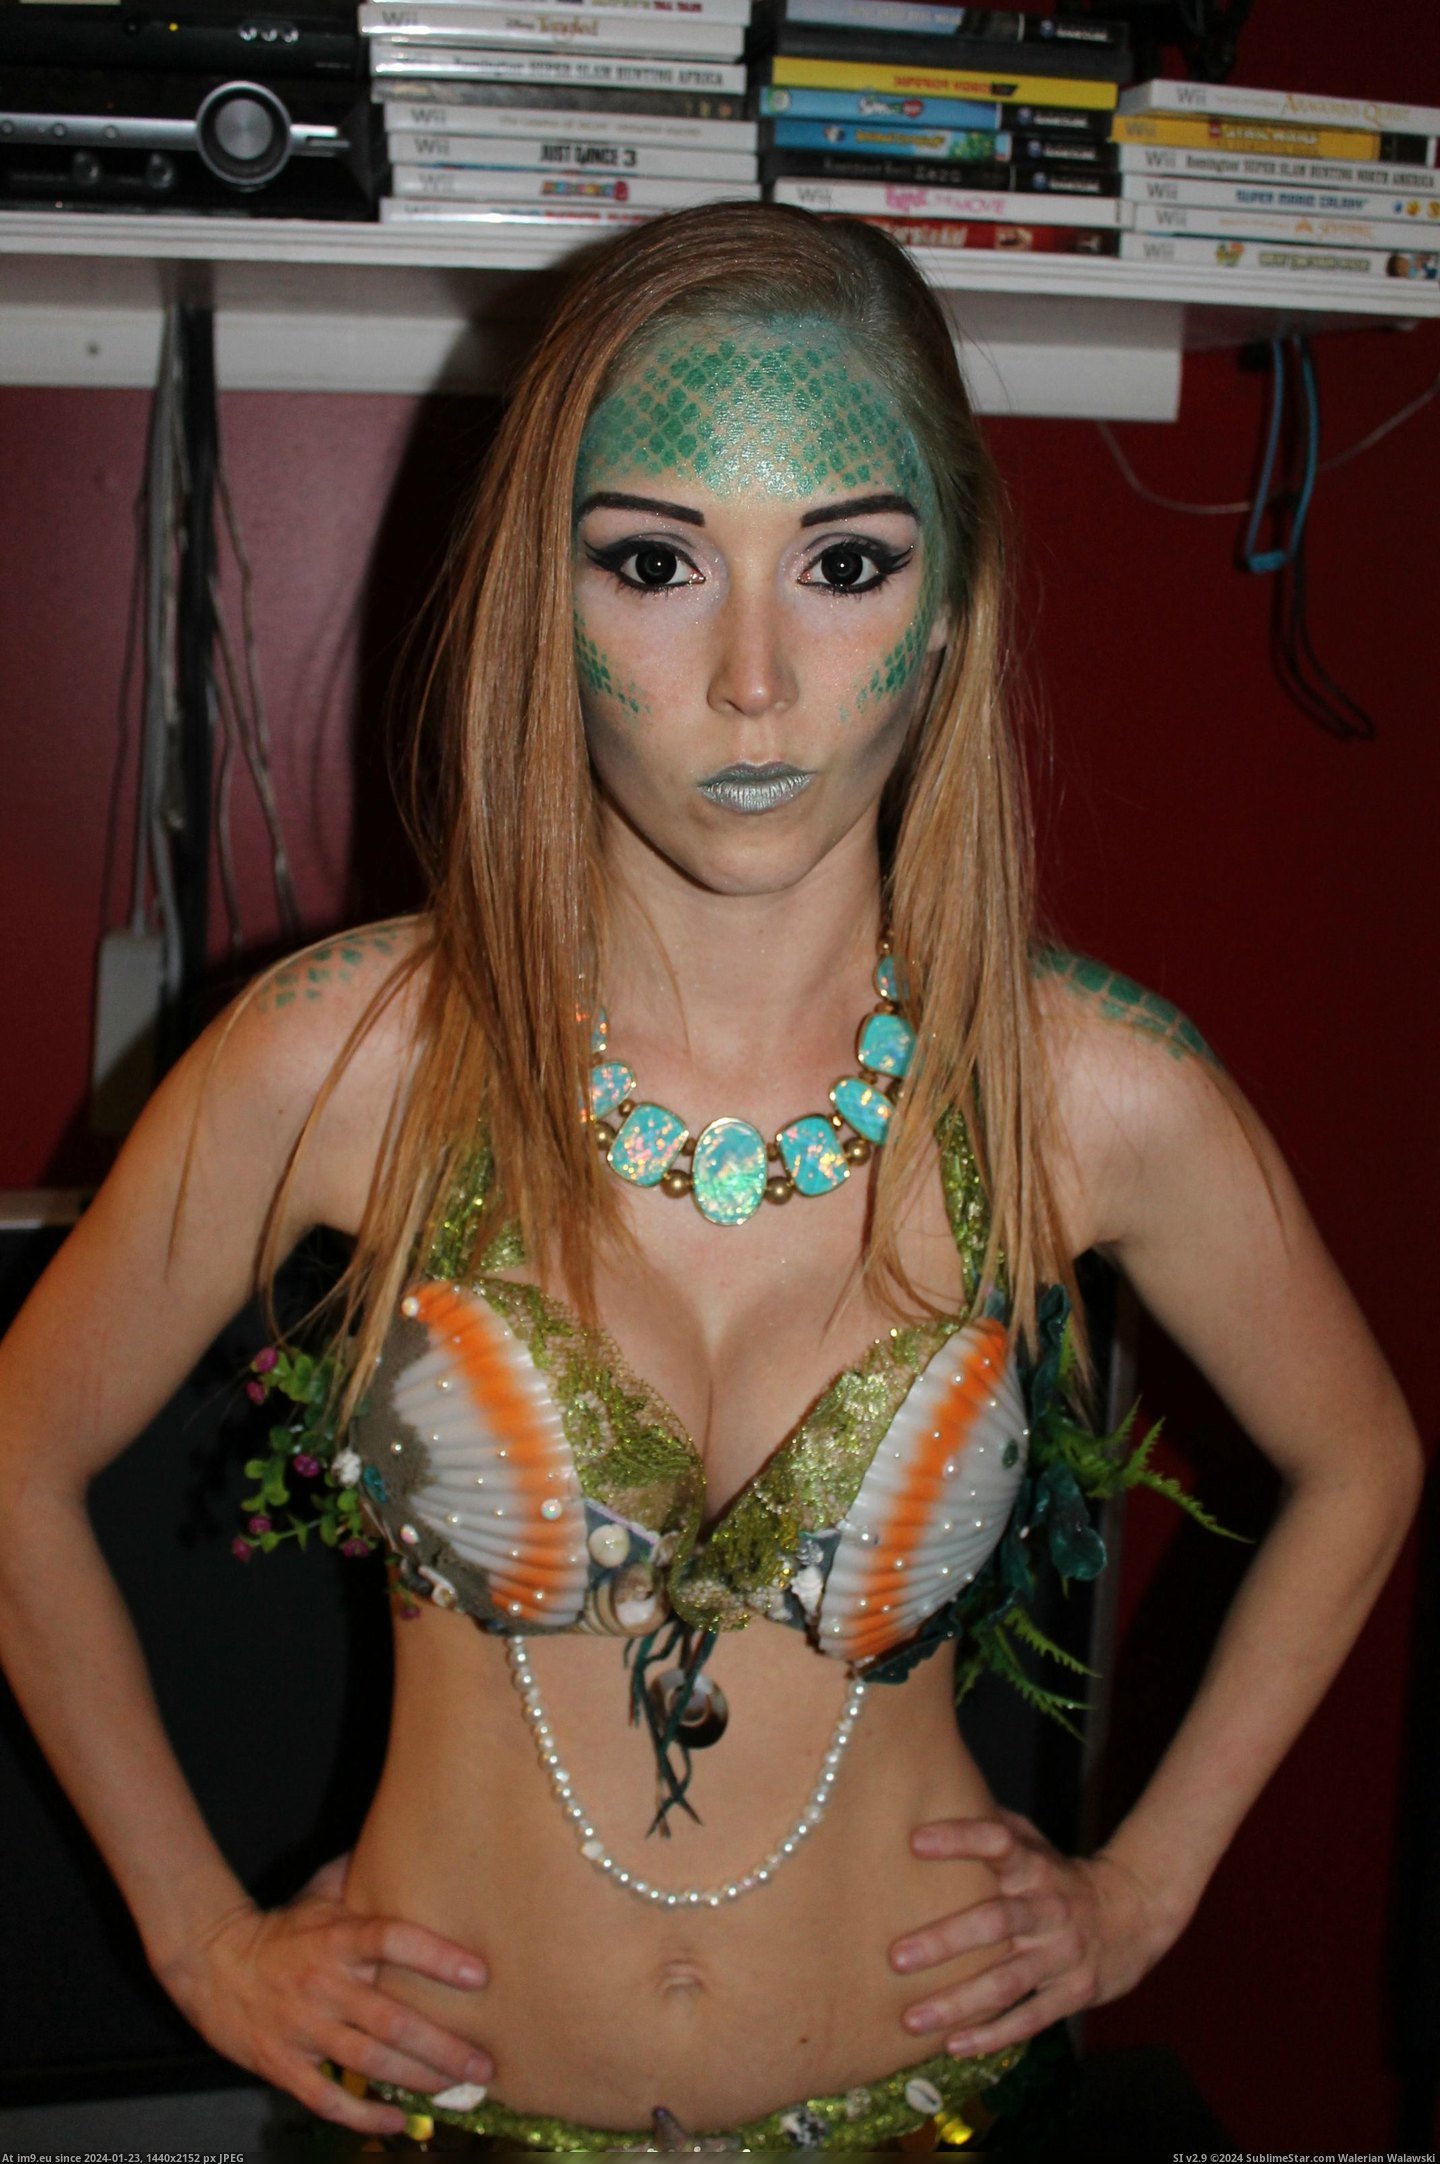 #Costume #Homemade #Mermaid [Pics] My homemade mermaid costume! 6 Pic. (Image of album My r/PICS favs))